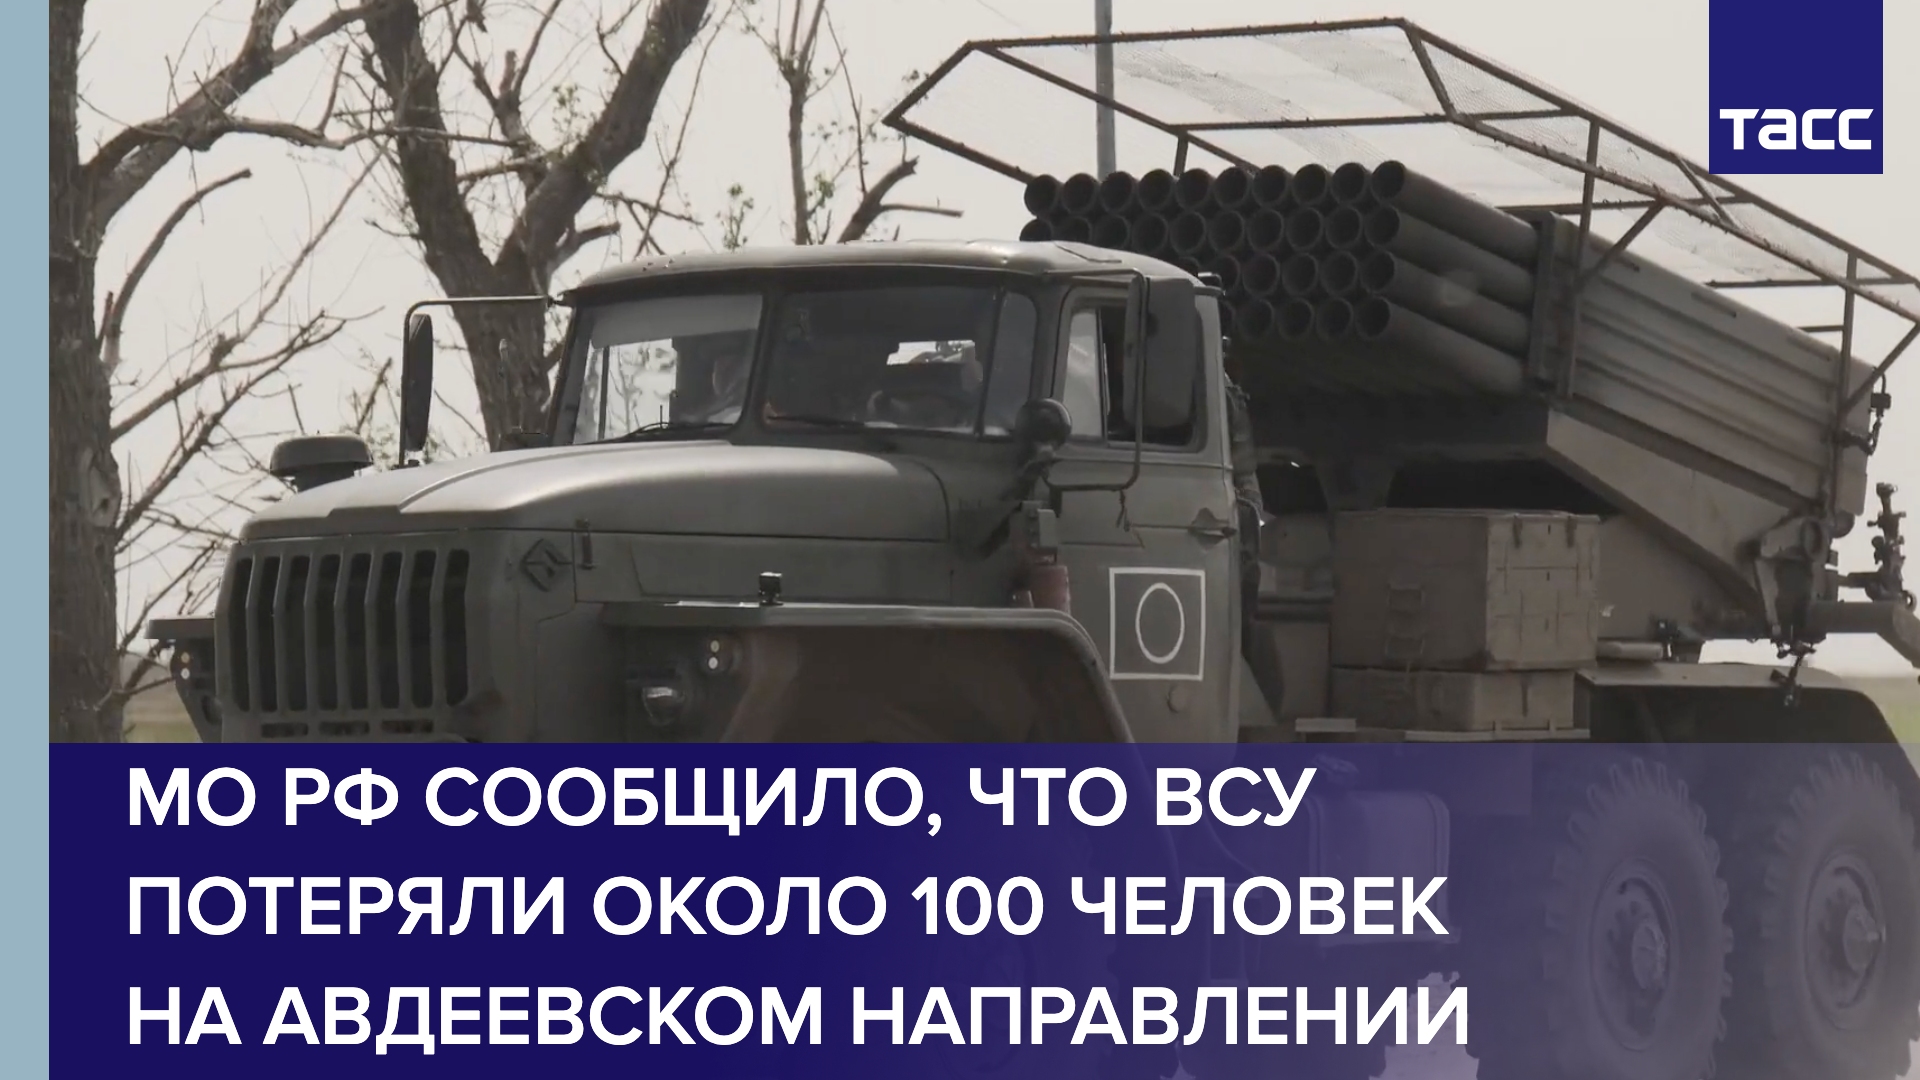 МО РФ сообщило, что ВСУ потеряли около 100 человек на авдеевском направлении